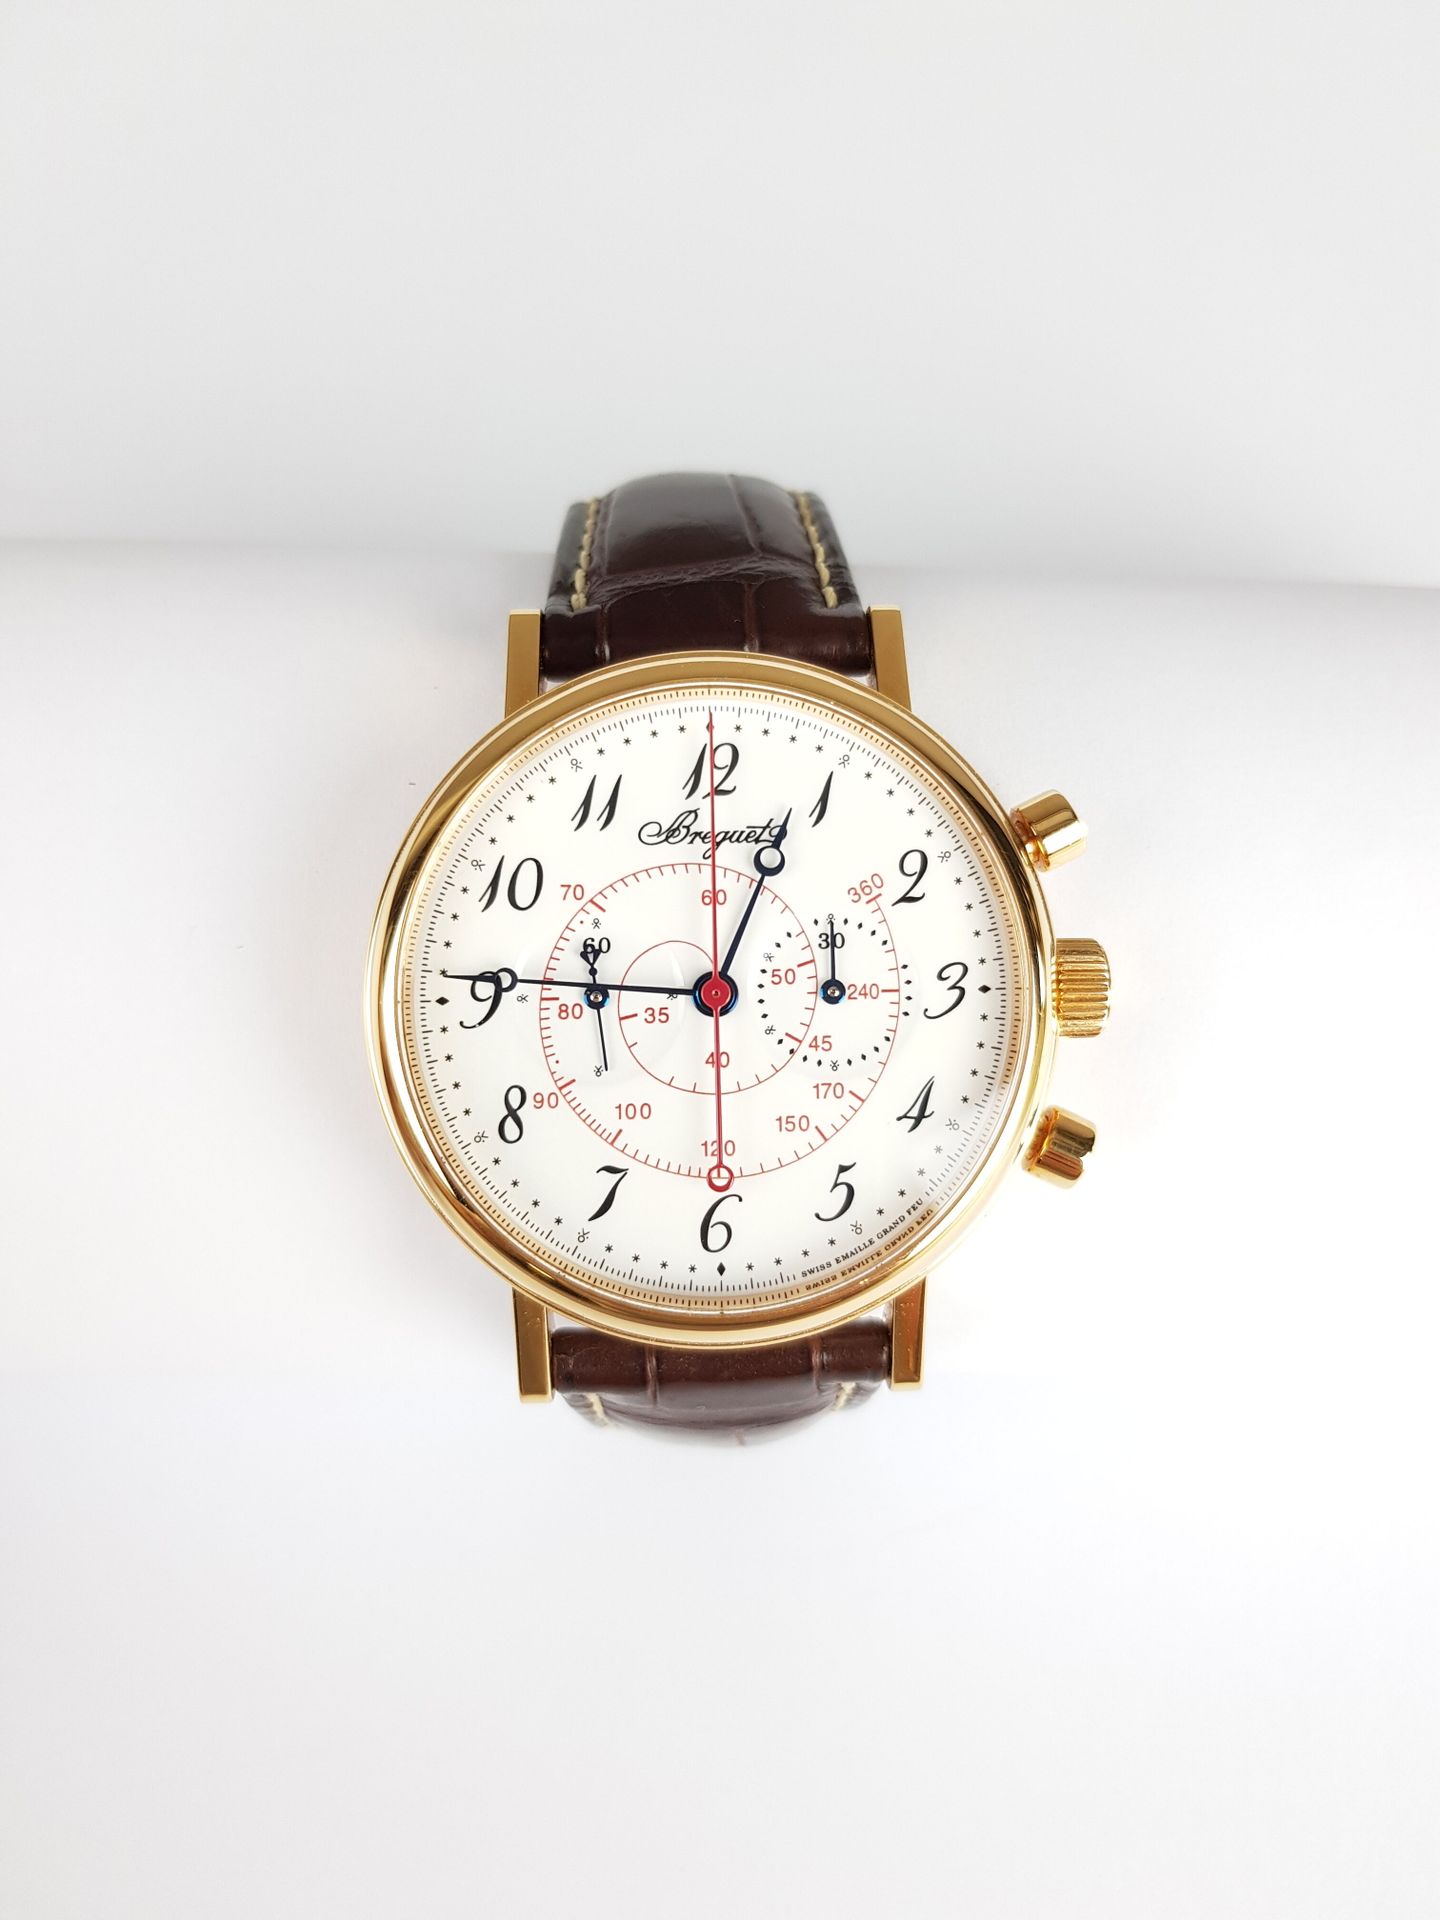 Null Mise à prix : 3 500 €

BREGUET

Chronographe "Classique"

Montre chronograp&hellip;